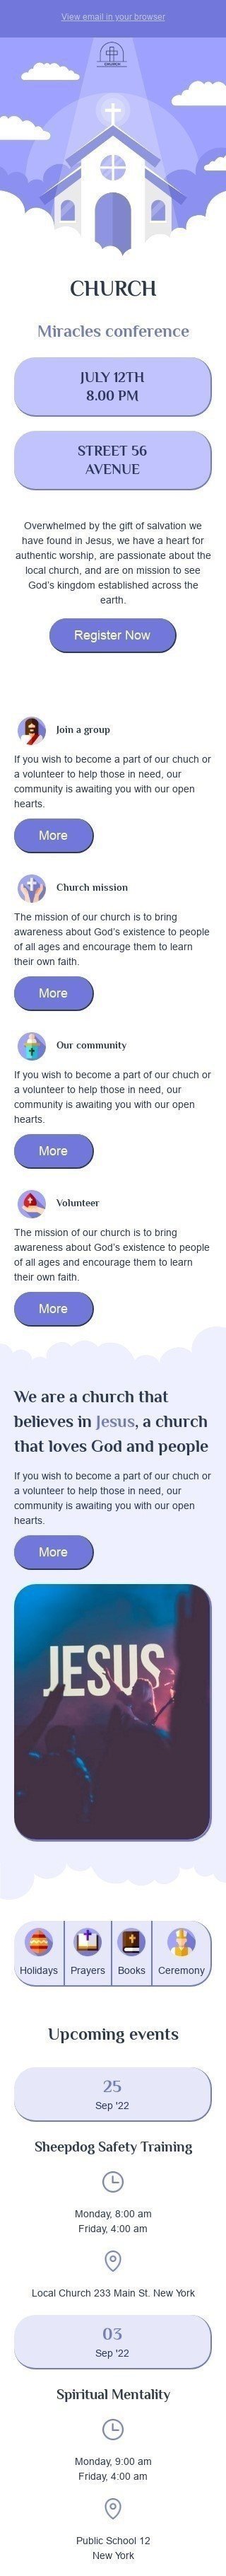 Modèle de courrier électronique Promo «Conférence Miracles» pour le secteur Église Affichage mobile